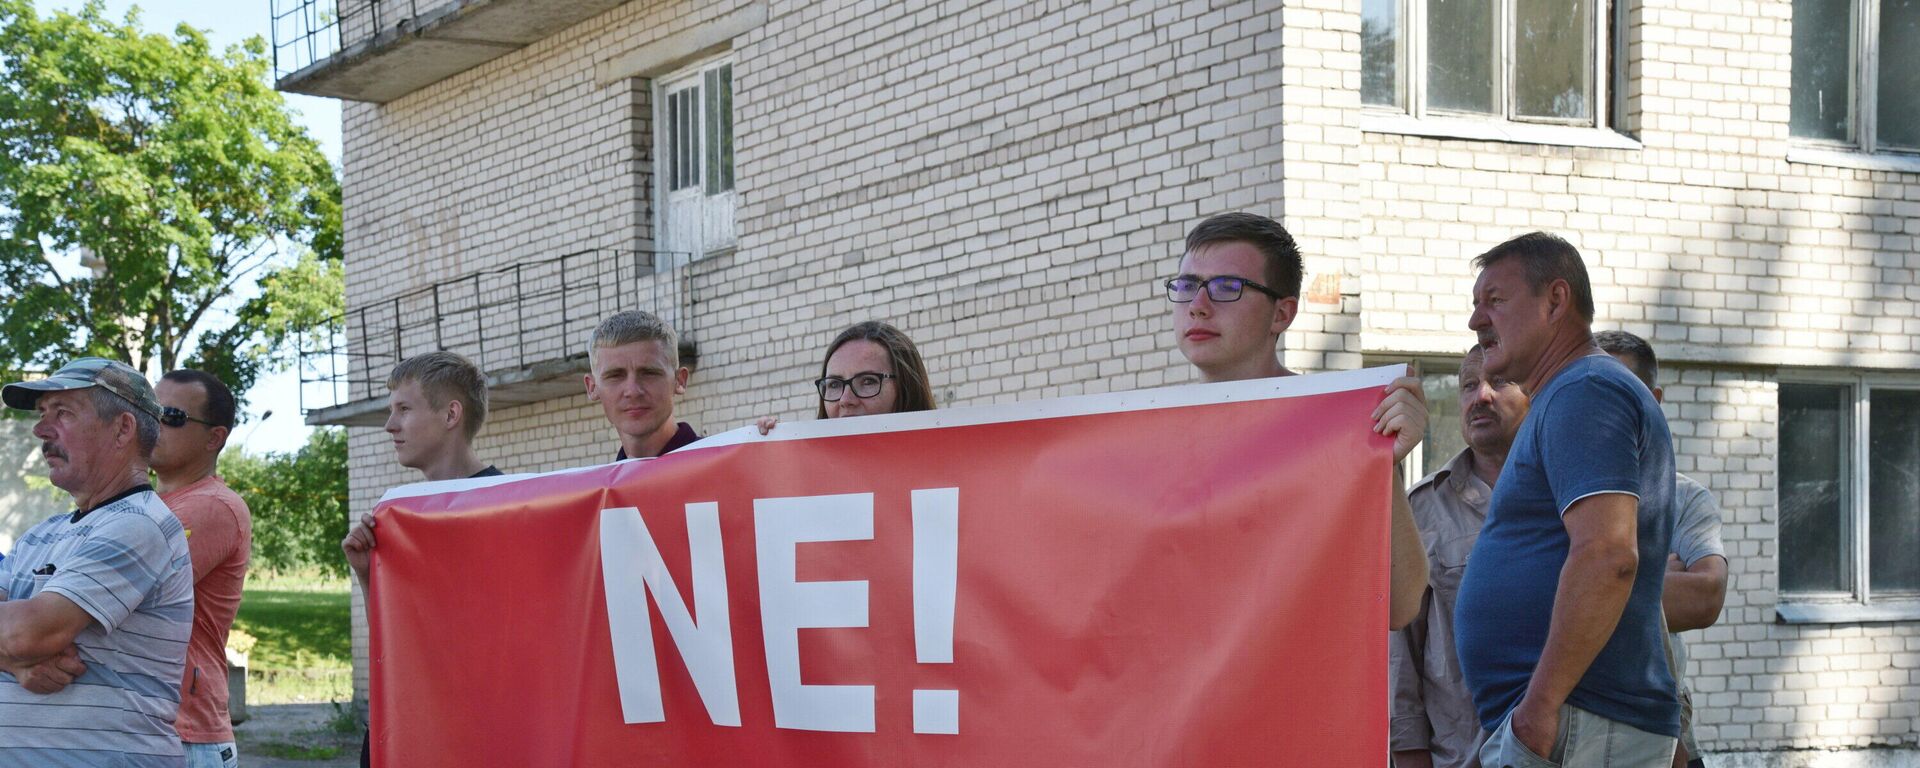 Акция протеста в Девенишкесе против строительства центра для мигрантов - Sputnik Lietuva, 1920, 27.07.2021